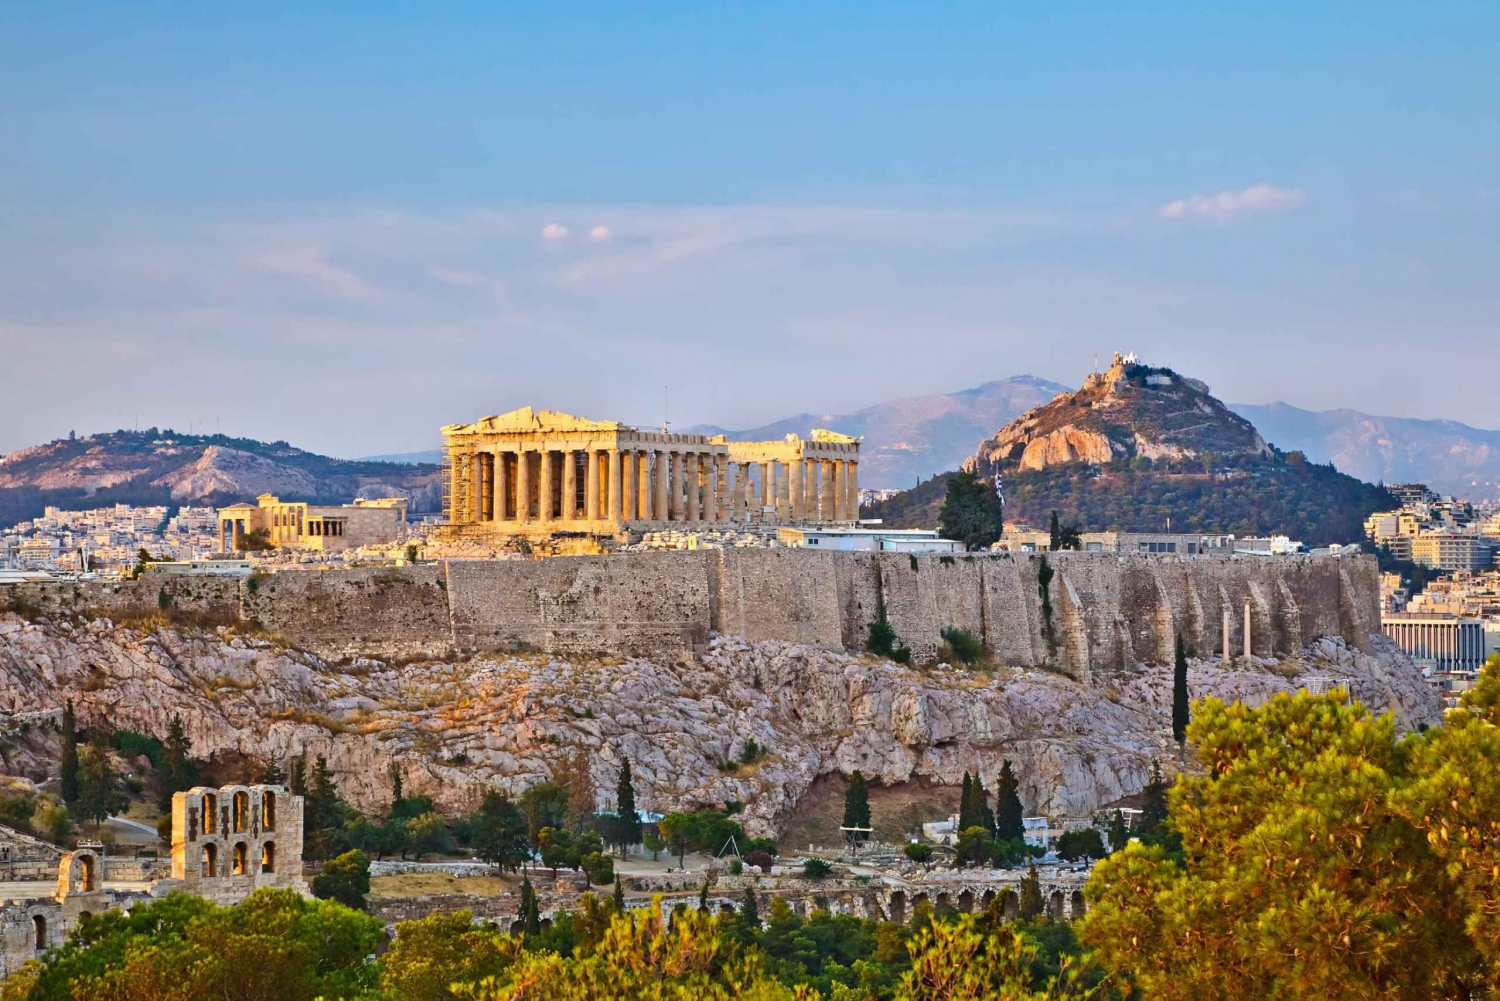 Museo dell'acropoli di Atene: ingresso e tour della città